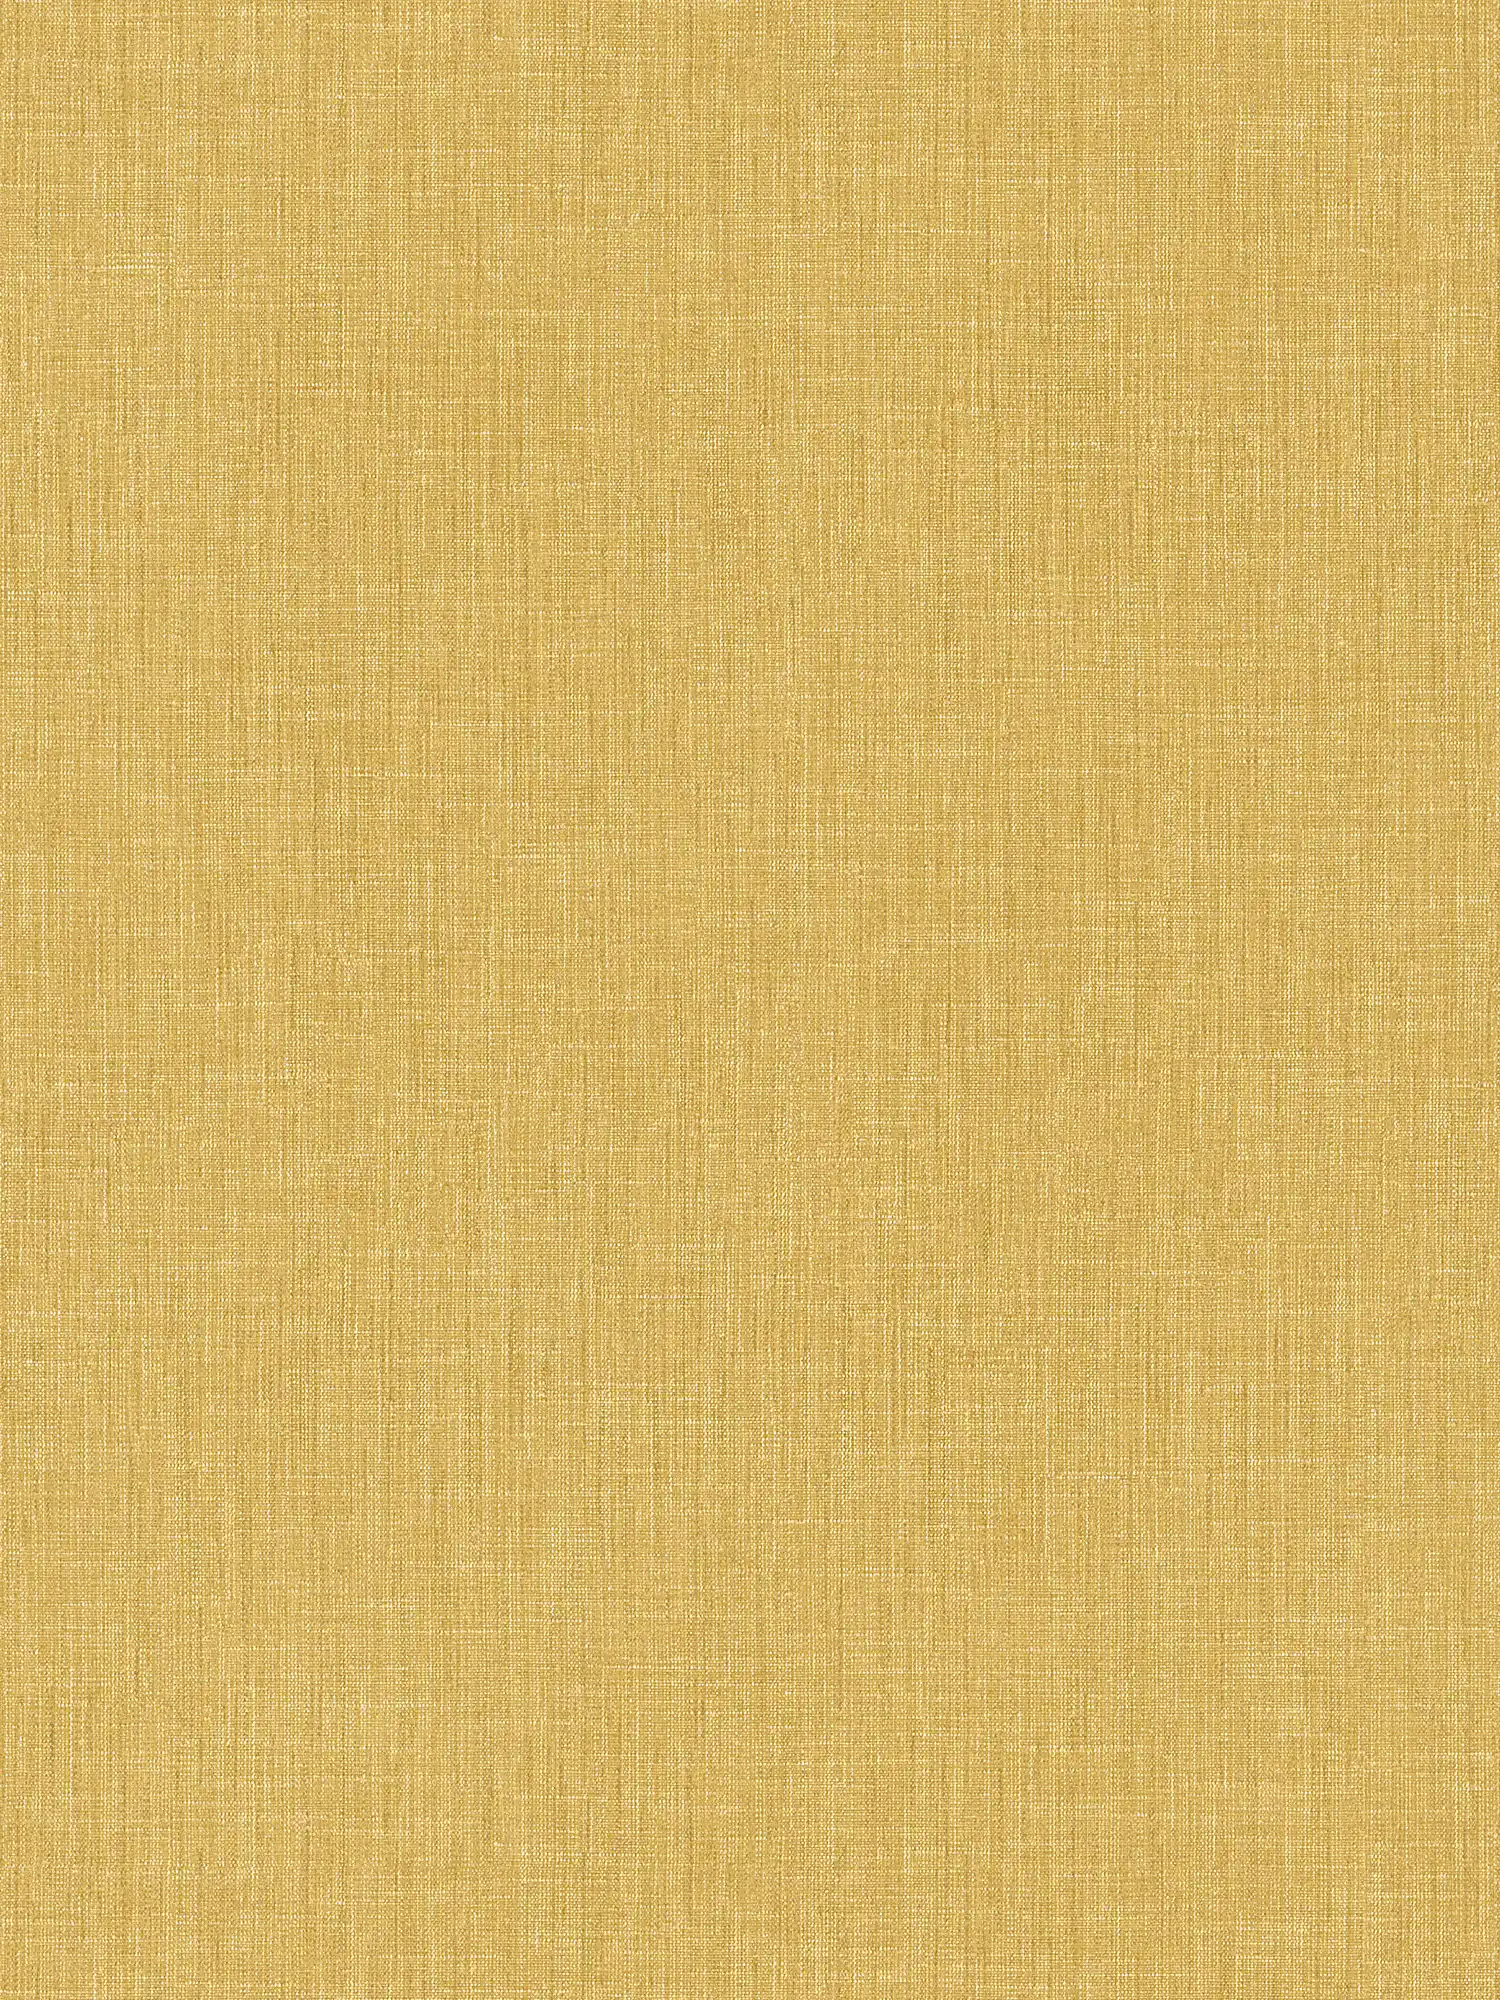 Papier peint uni avec structure textile - jaune
